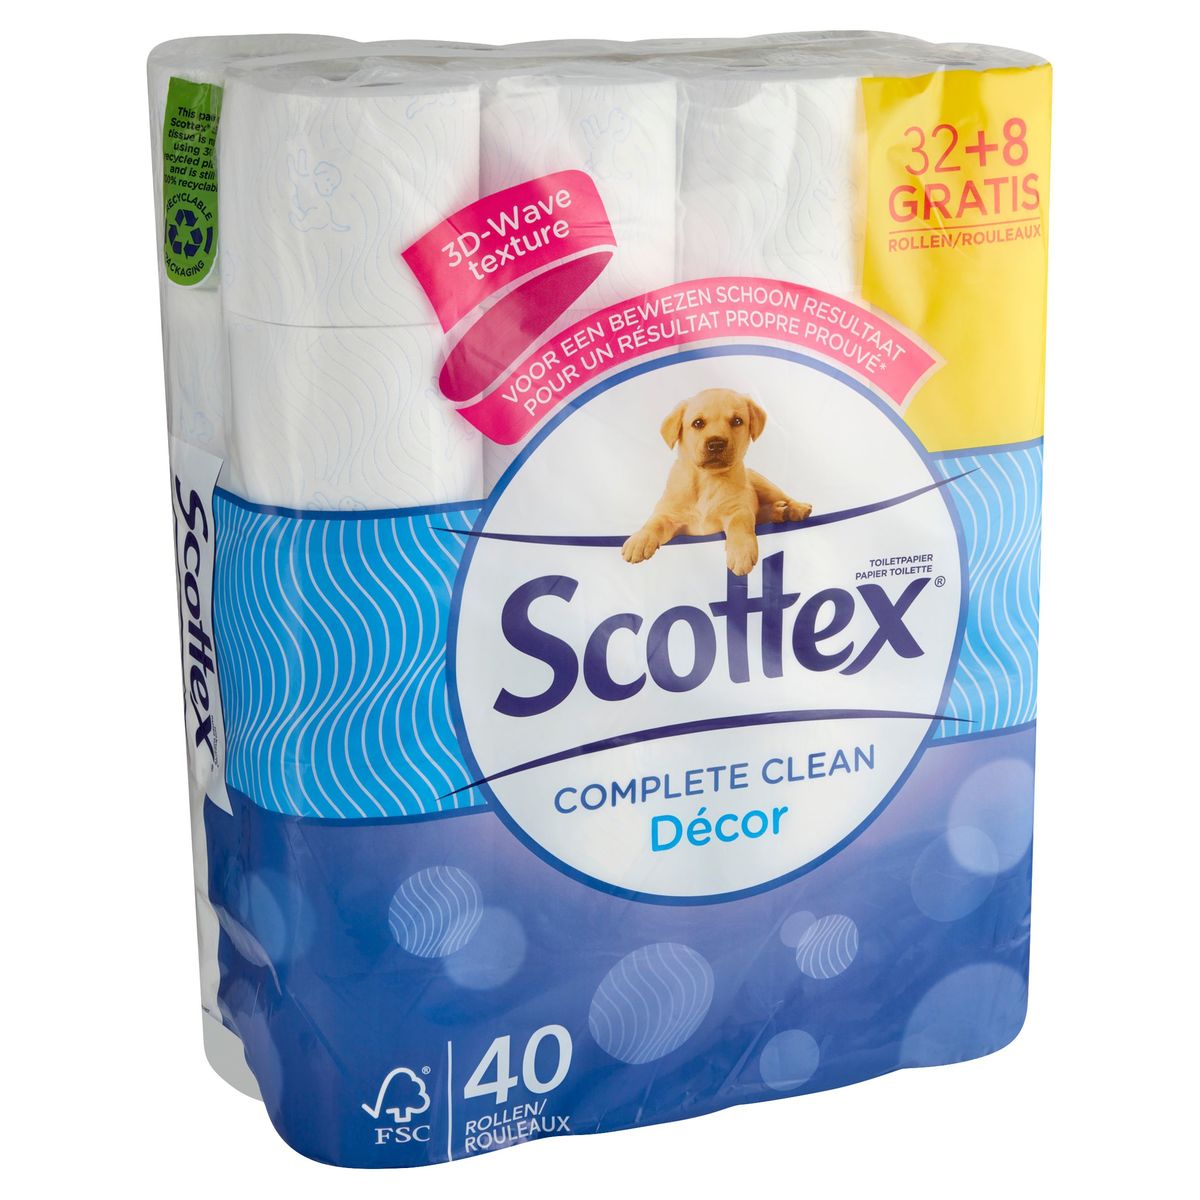 Scottex Toiletpapier Complete Clean Décor 32+8 Gratis Rollen